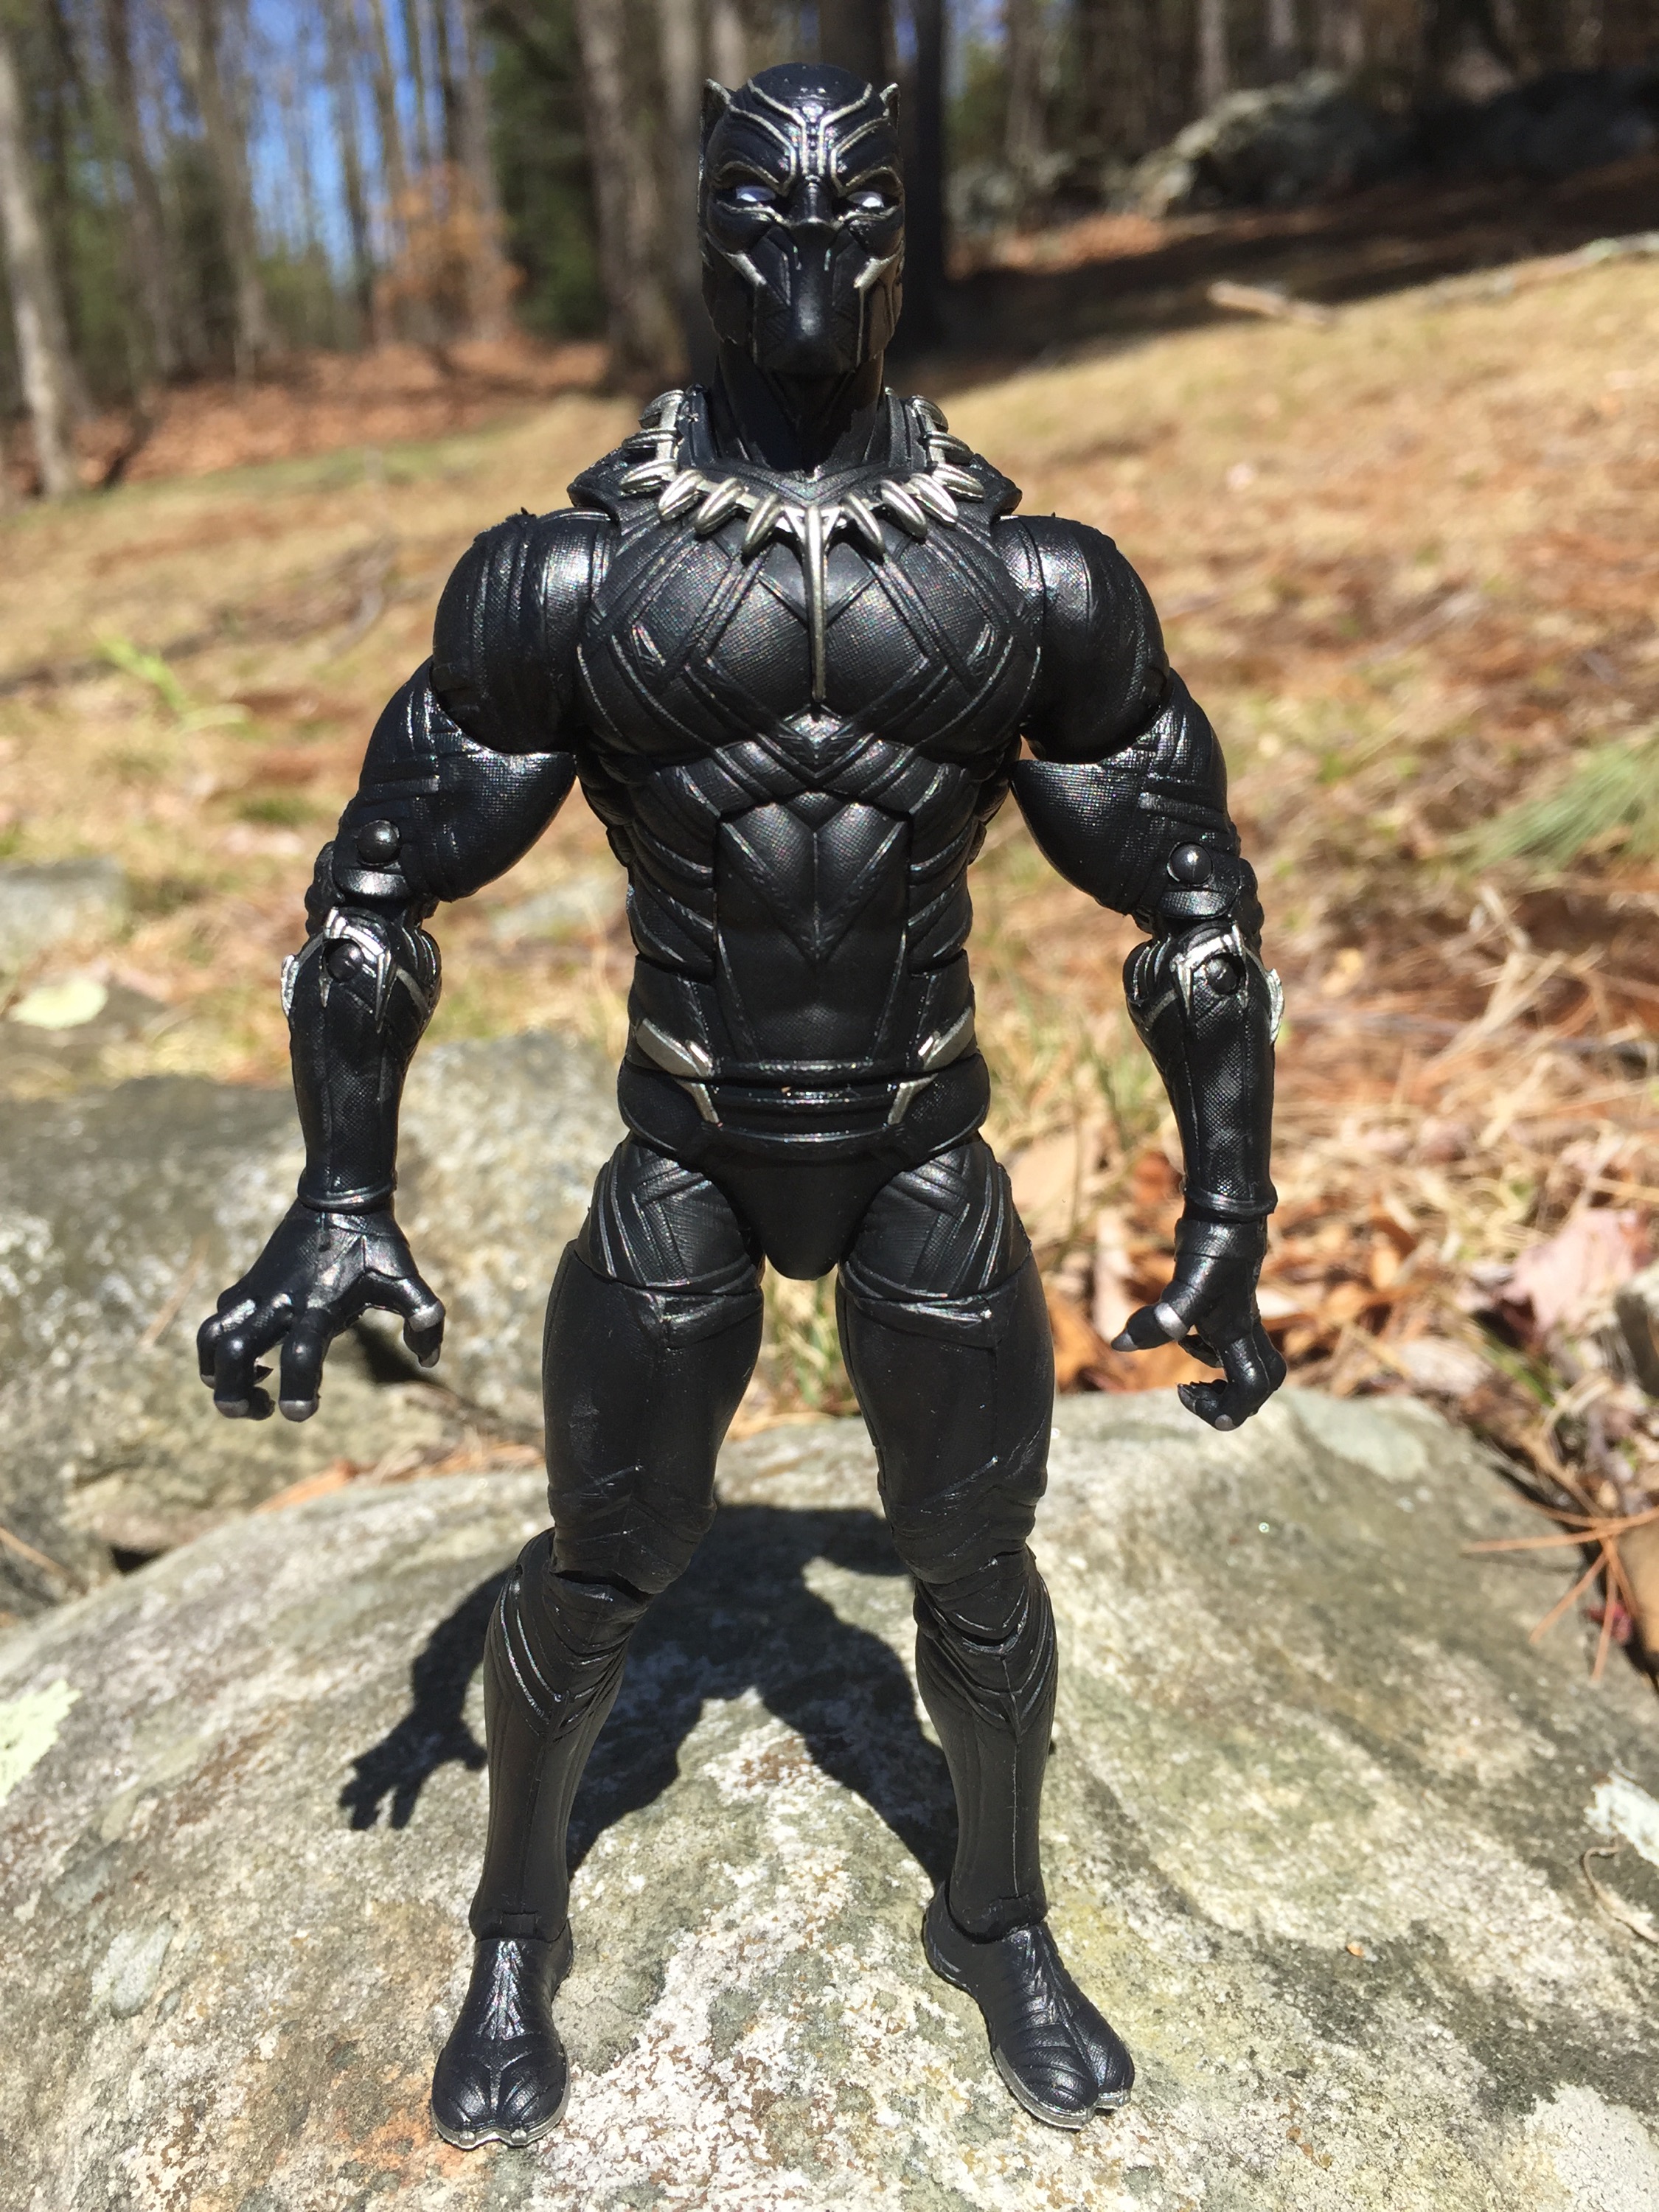 Marvel Legends Civil War Black Panther 6" Figure Review